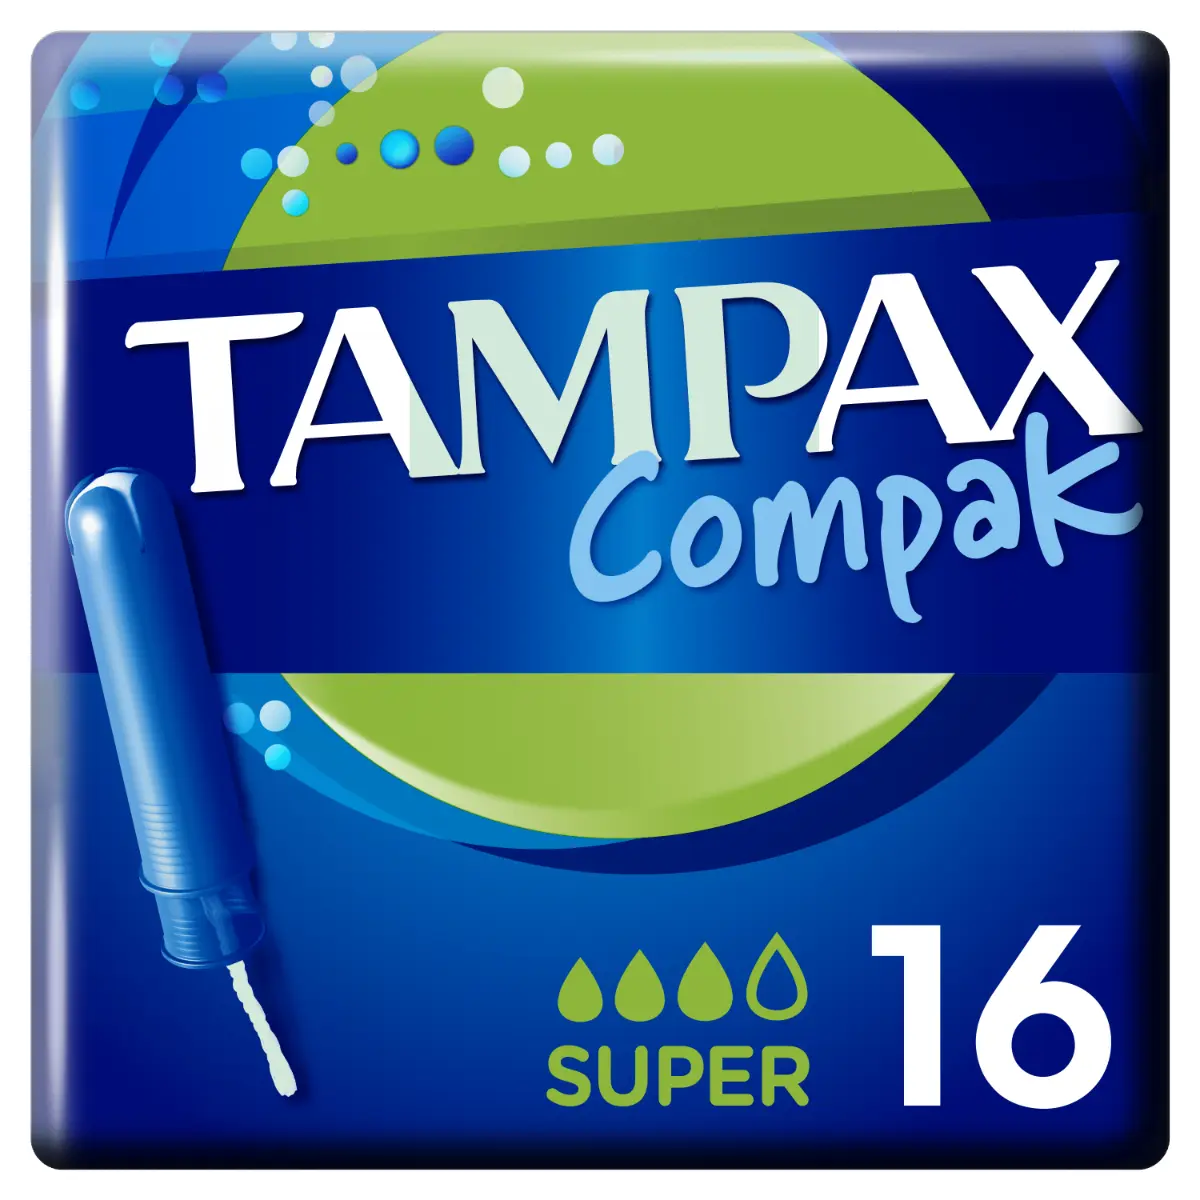 Tampoane Compak Super cu aplicator Tampax, 16bucati